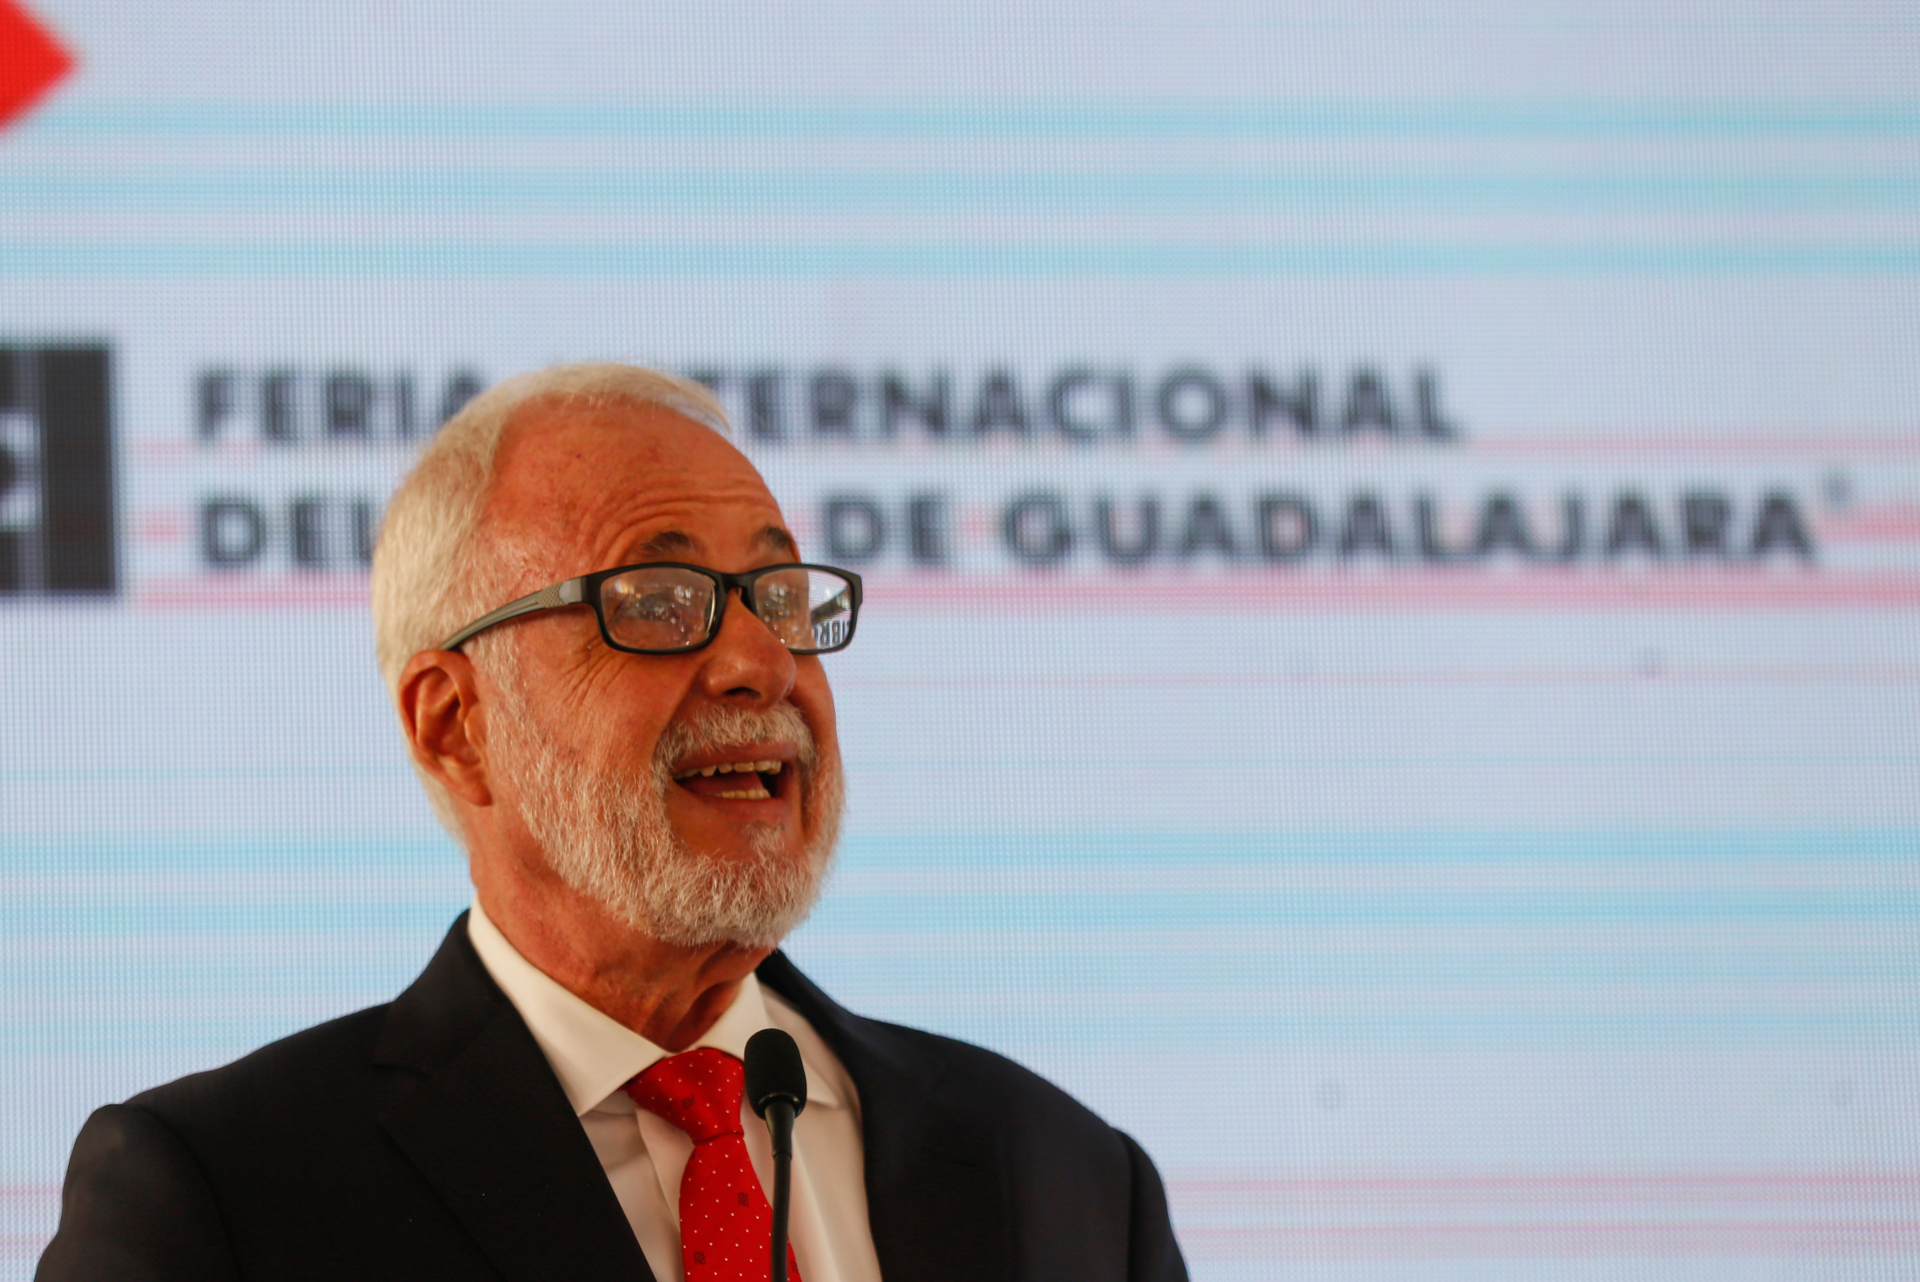 Se suicida Raúl Padilla López, presidente de la FIL Guadalajara